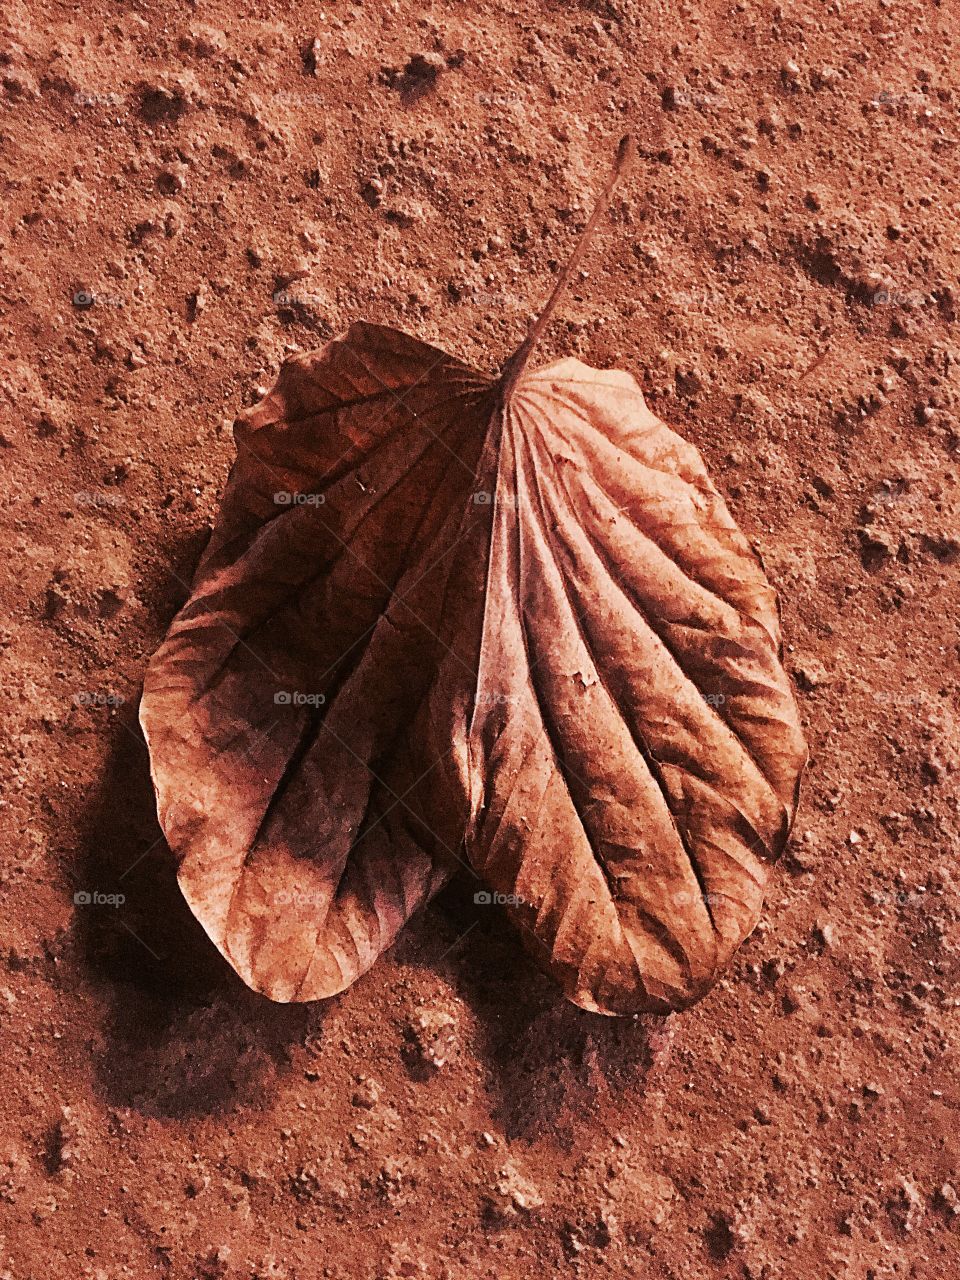 Dry fallen leaf